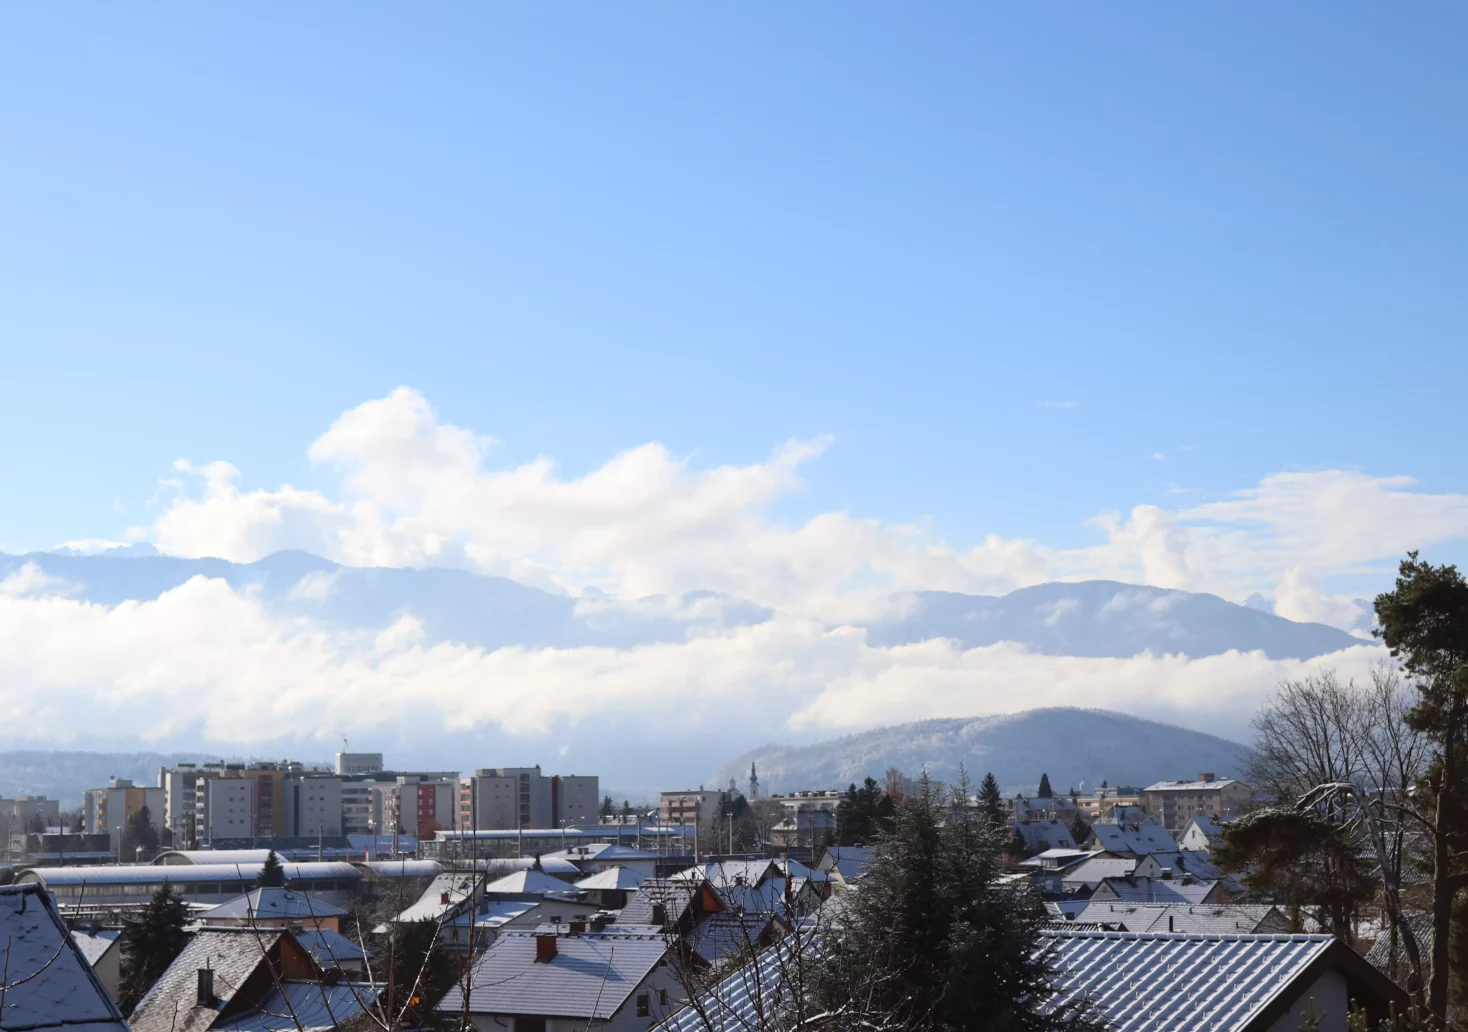 Ein Bild auf 5min.at zeigt das verschneite Villach vor einer Bergkulisse. Der Himmel ist blau.